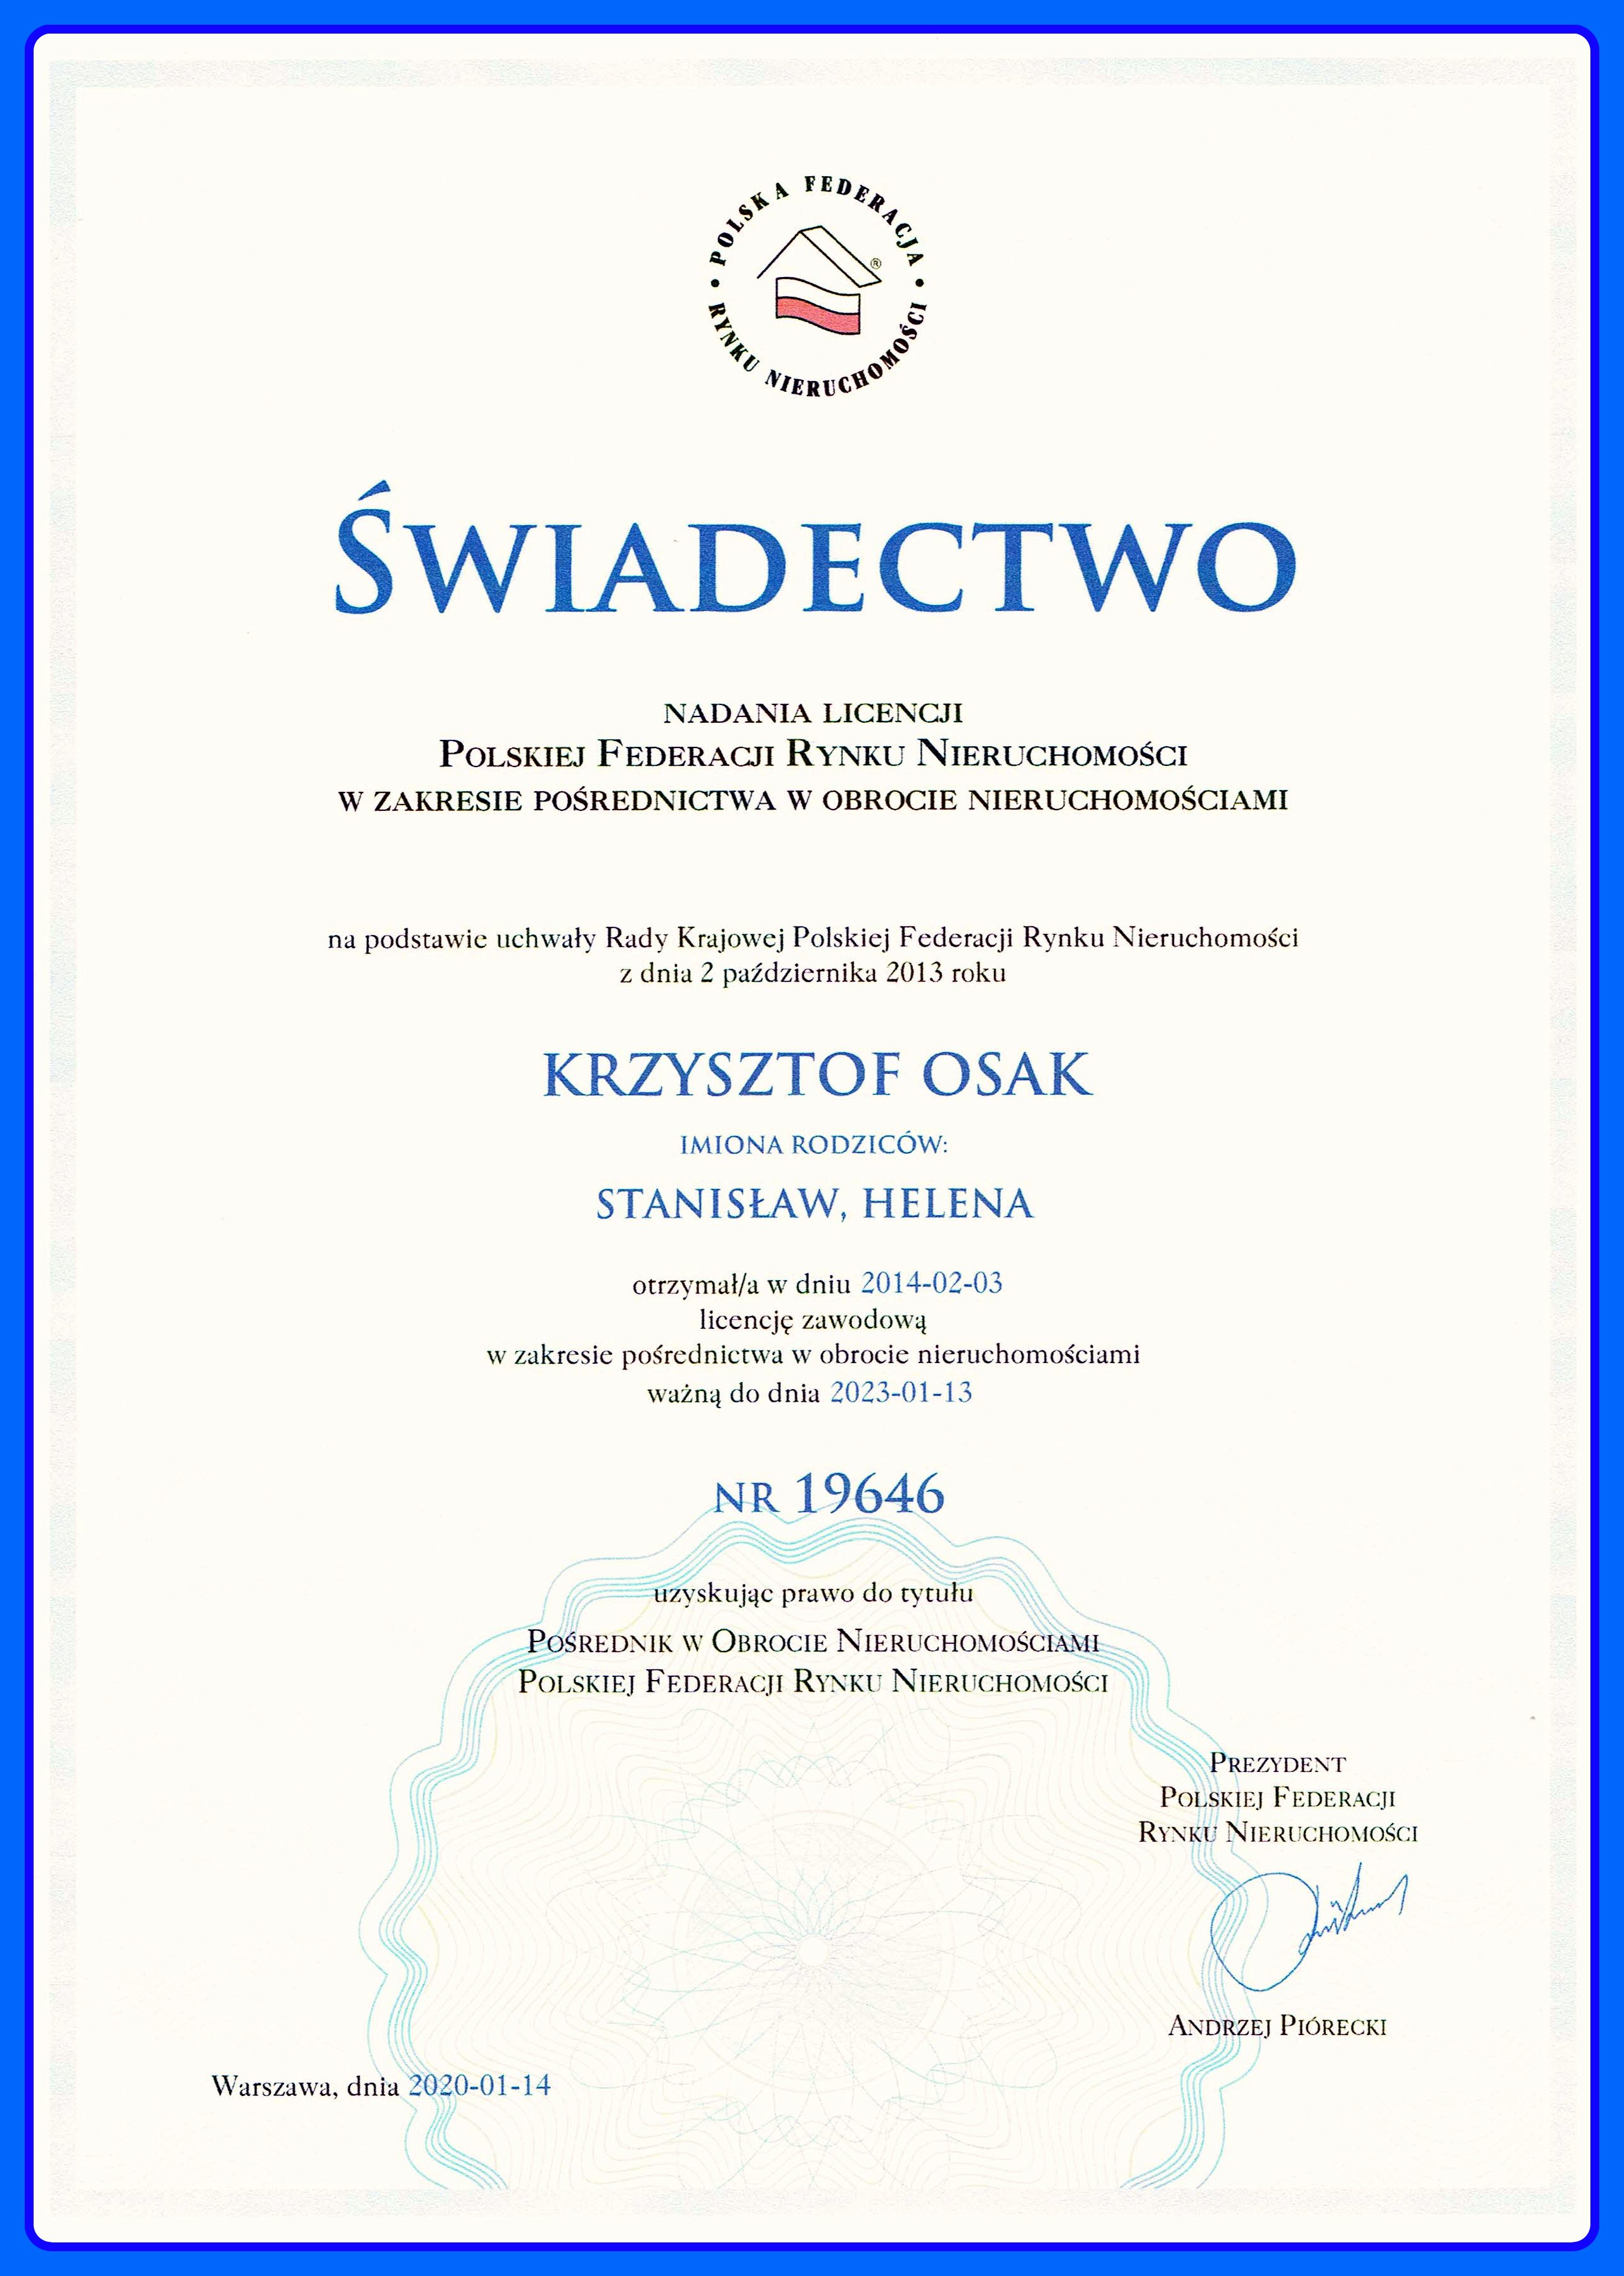 Certyfikat Osak